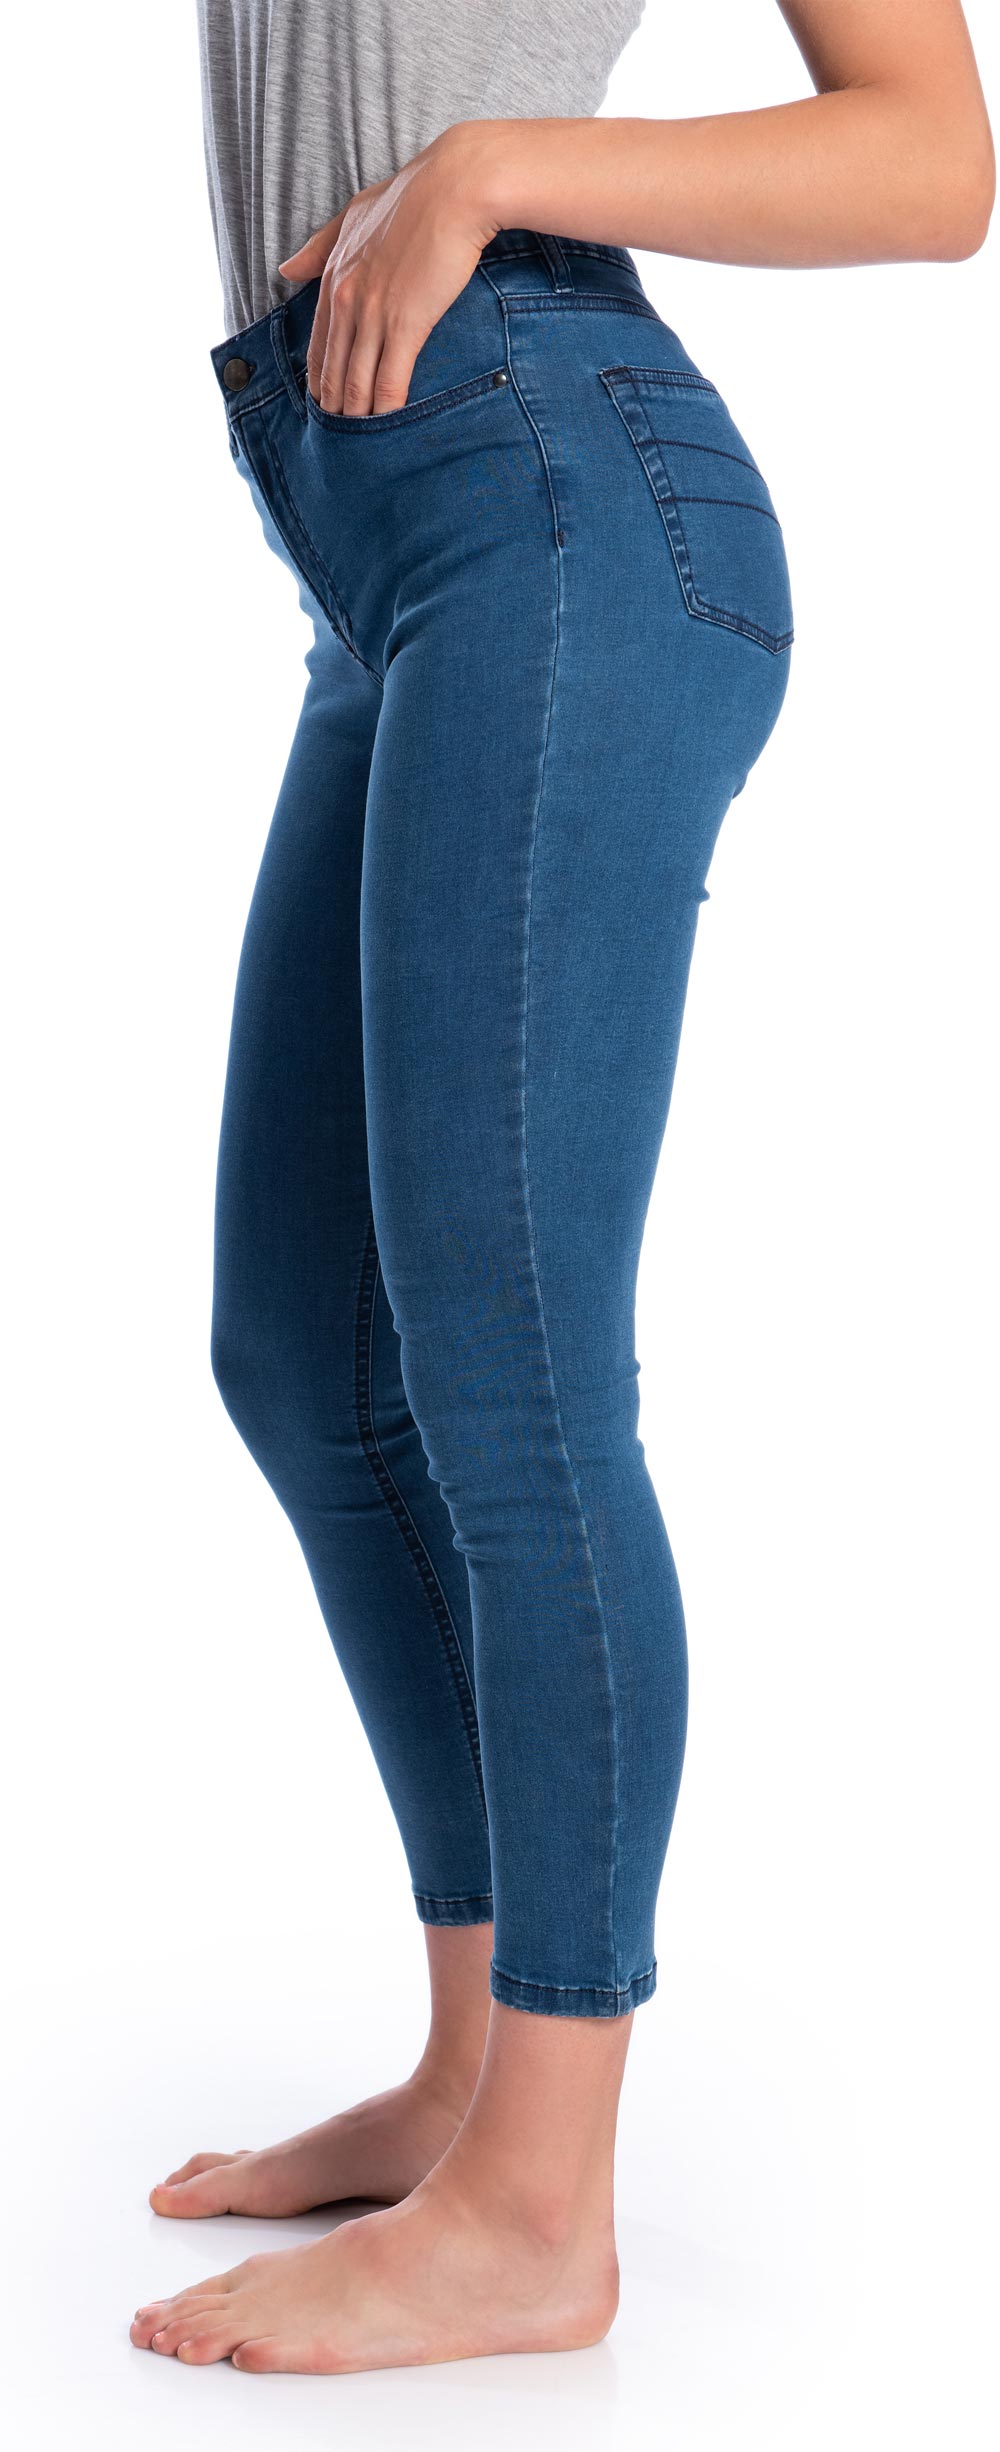 Leichte Sommer Jeans In Blau Biobaumwolle Grundstoff Net